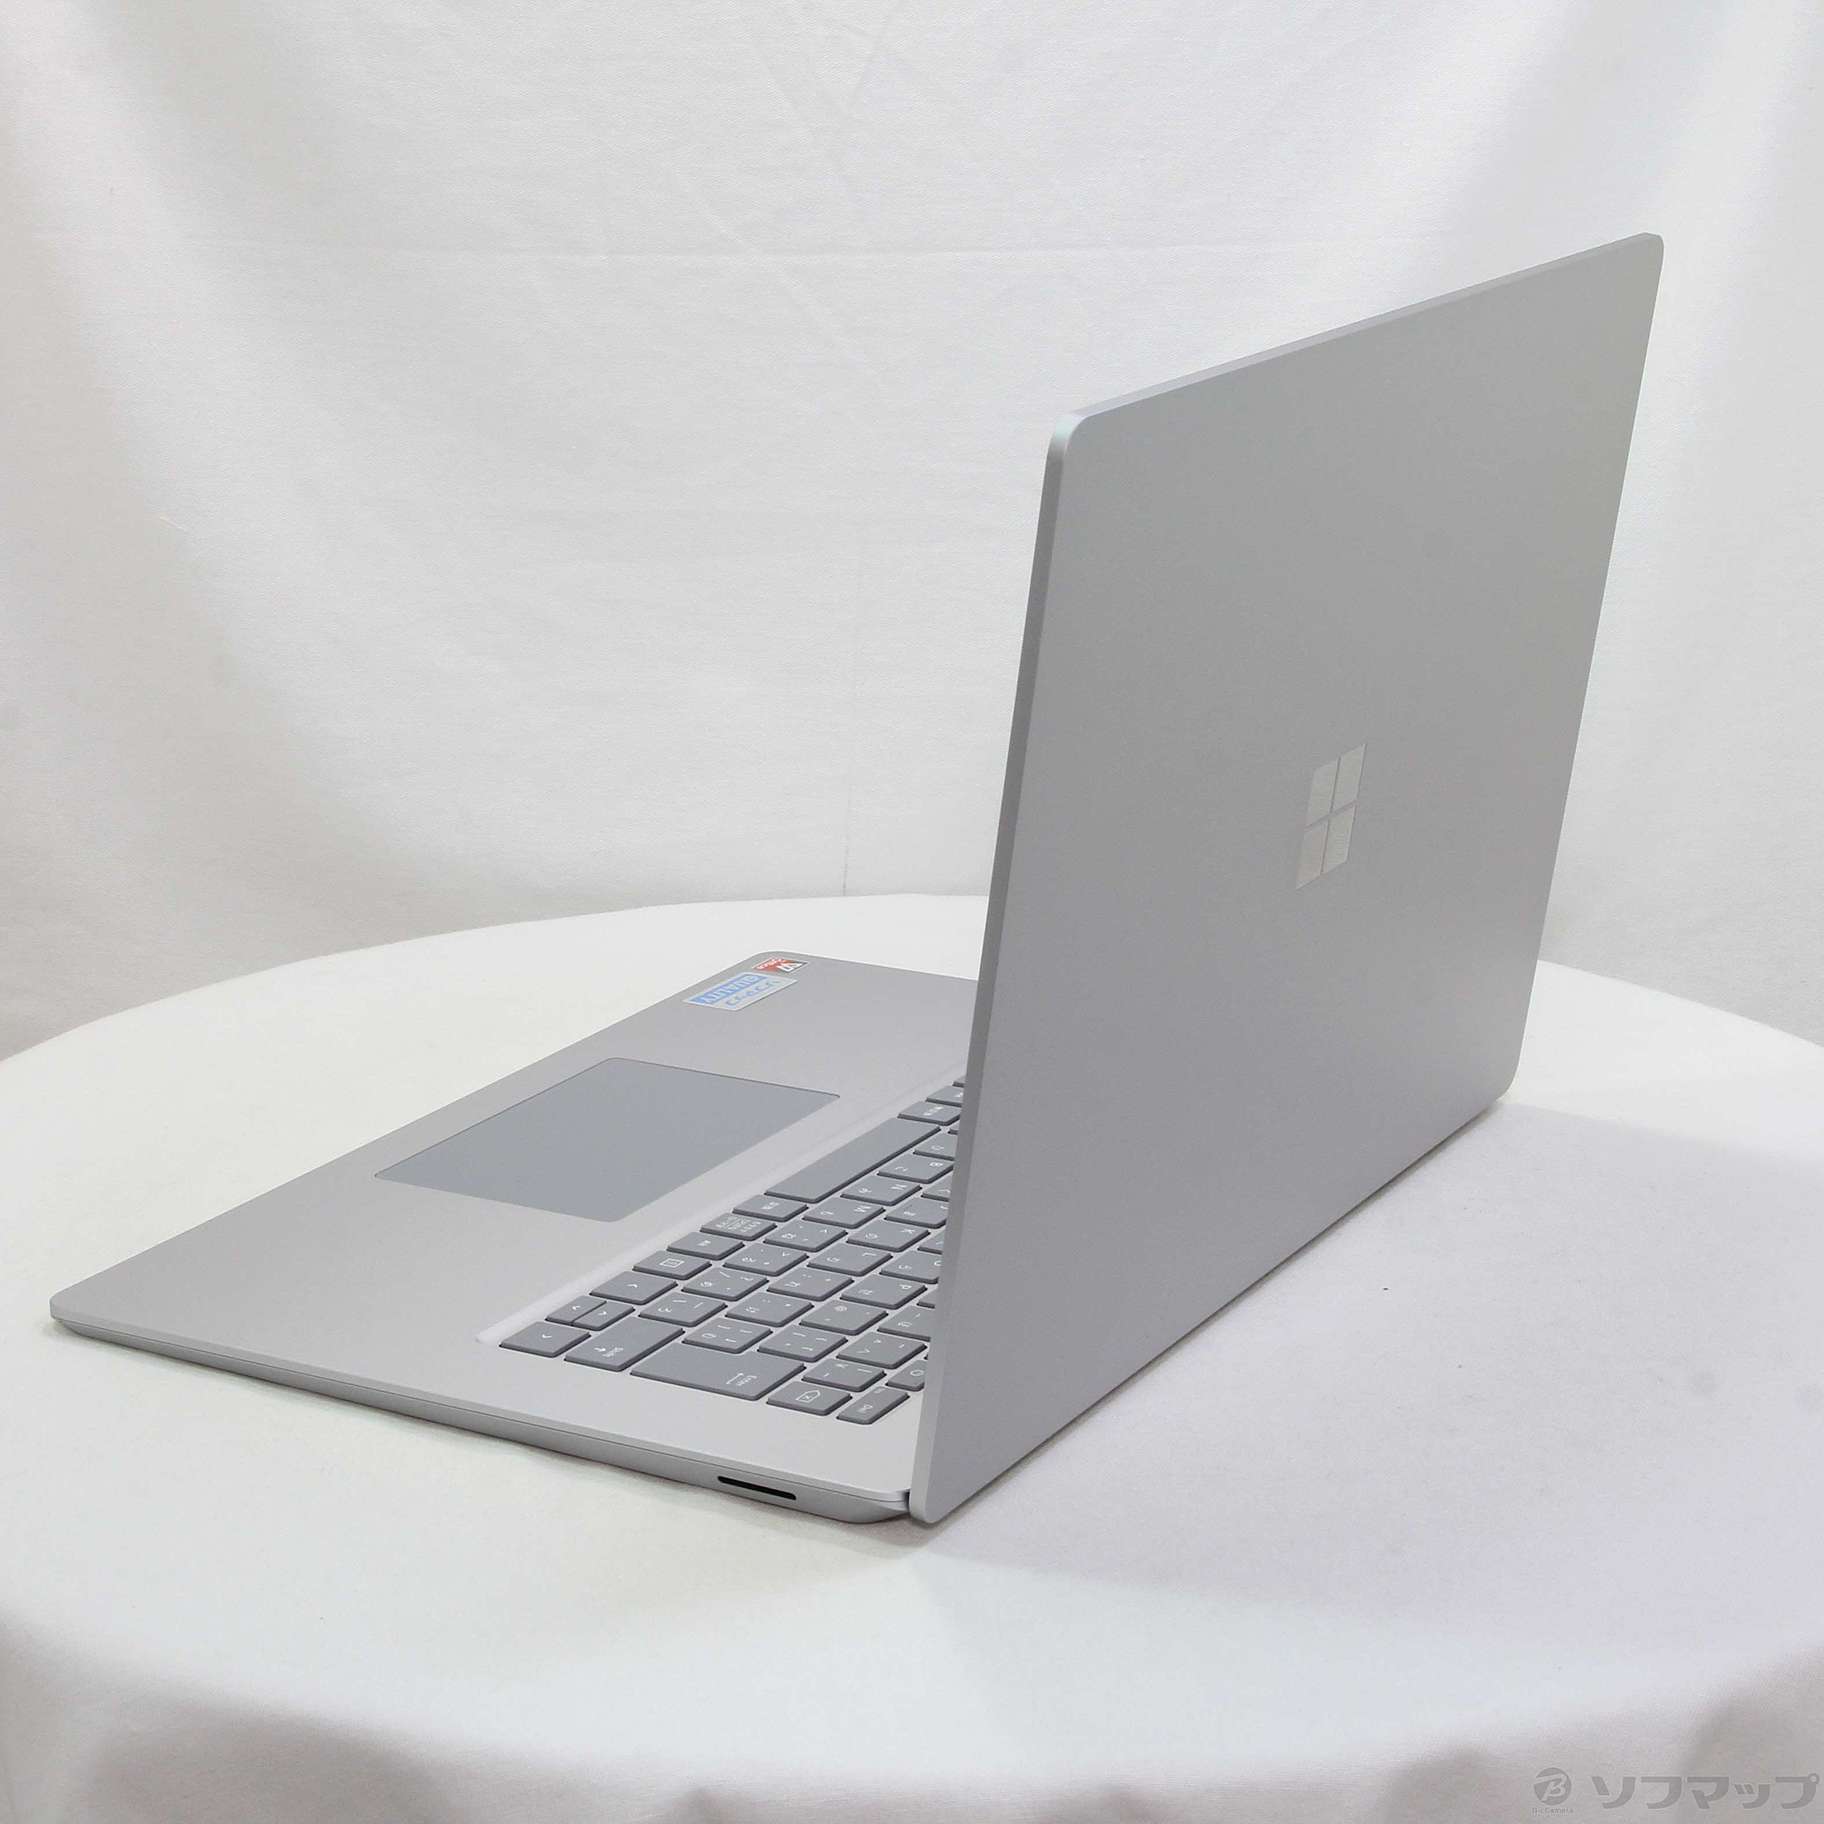 Surface Laptop 4 5UI-00020